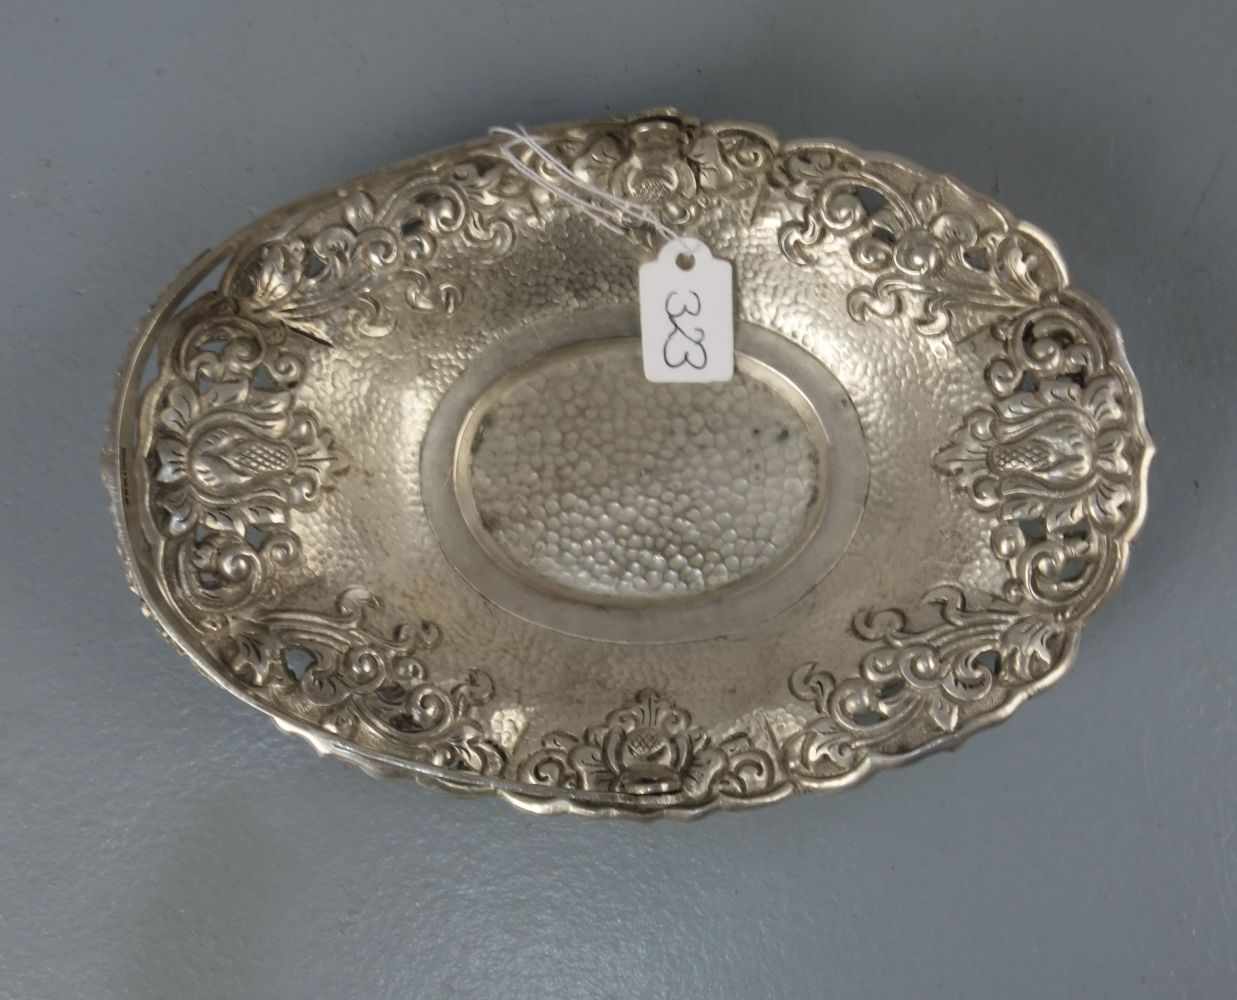 SILBERNE SCHALE / KORBSCHALE / silver bowl, 800er Silber (112 g), gepunzt mit Feingehaltsangabe - Image 3 of 5